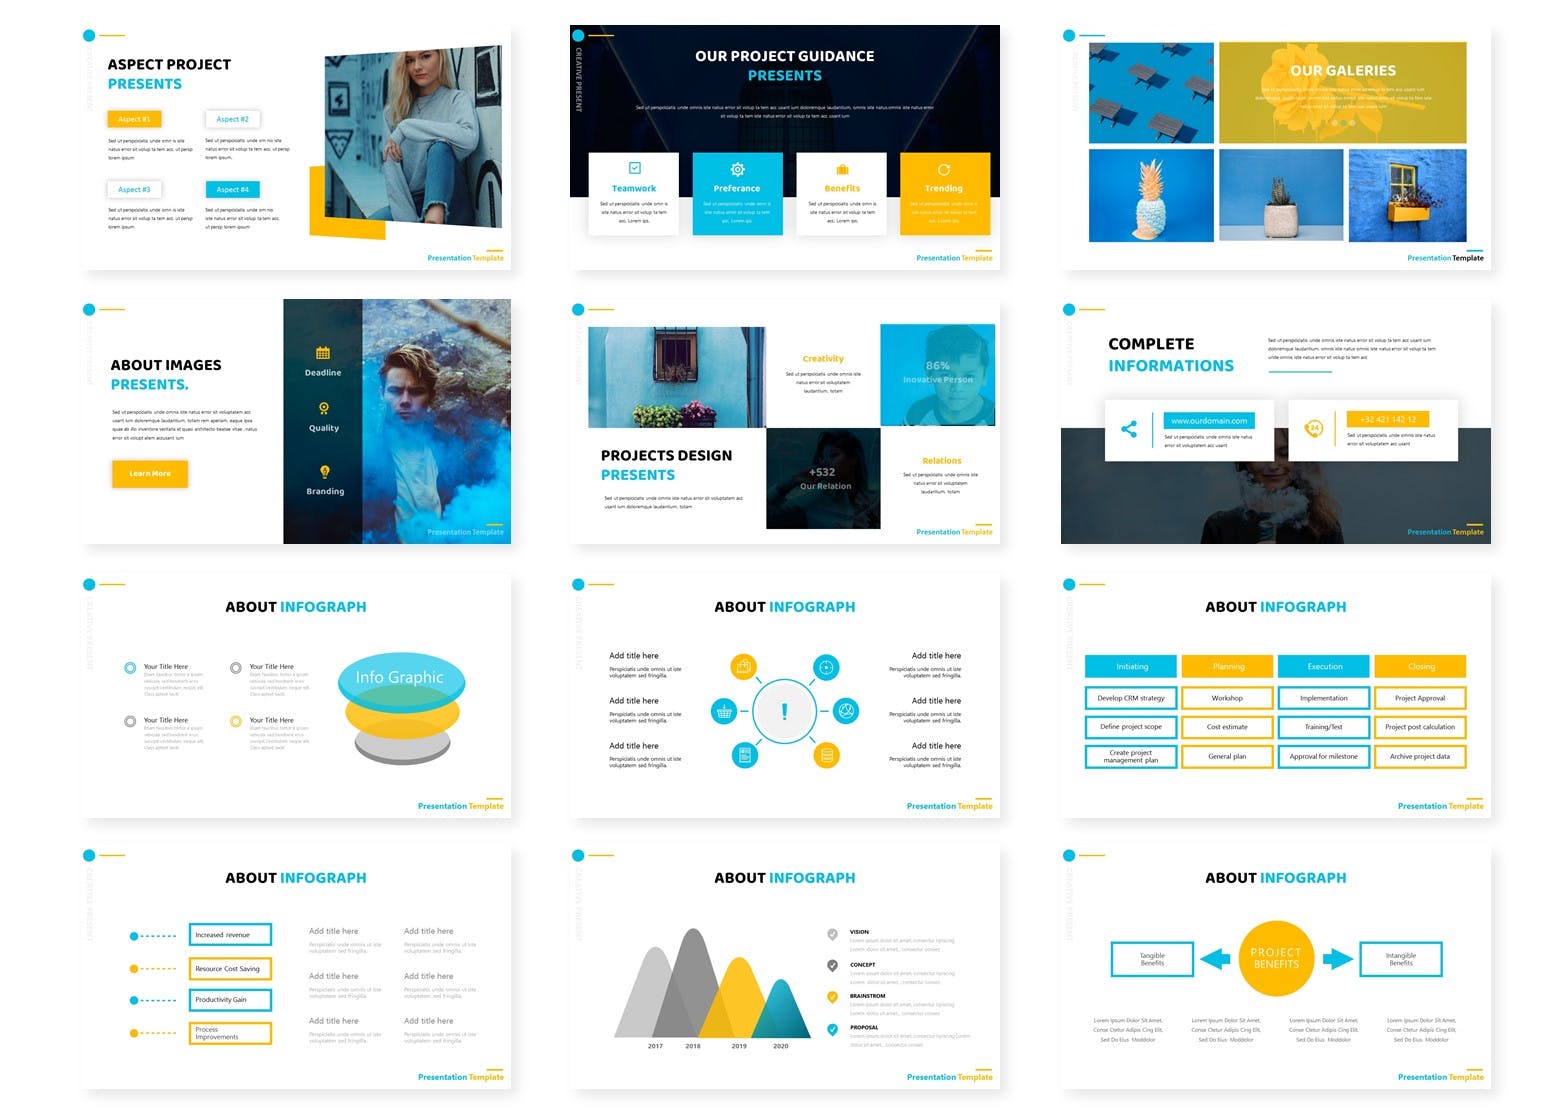 简洁经典蓝黄色系列PPT模板 Bluetographs – PowerPoint Template设计素材模板